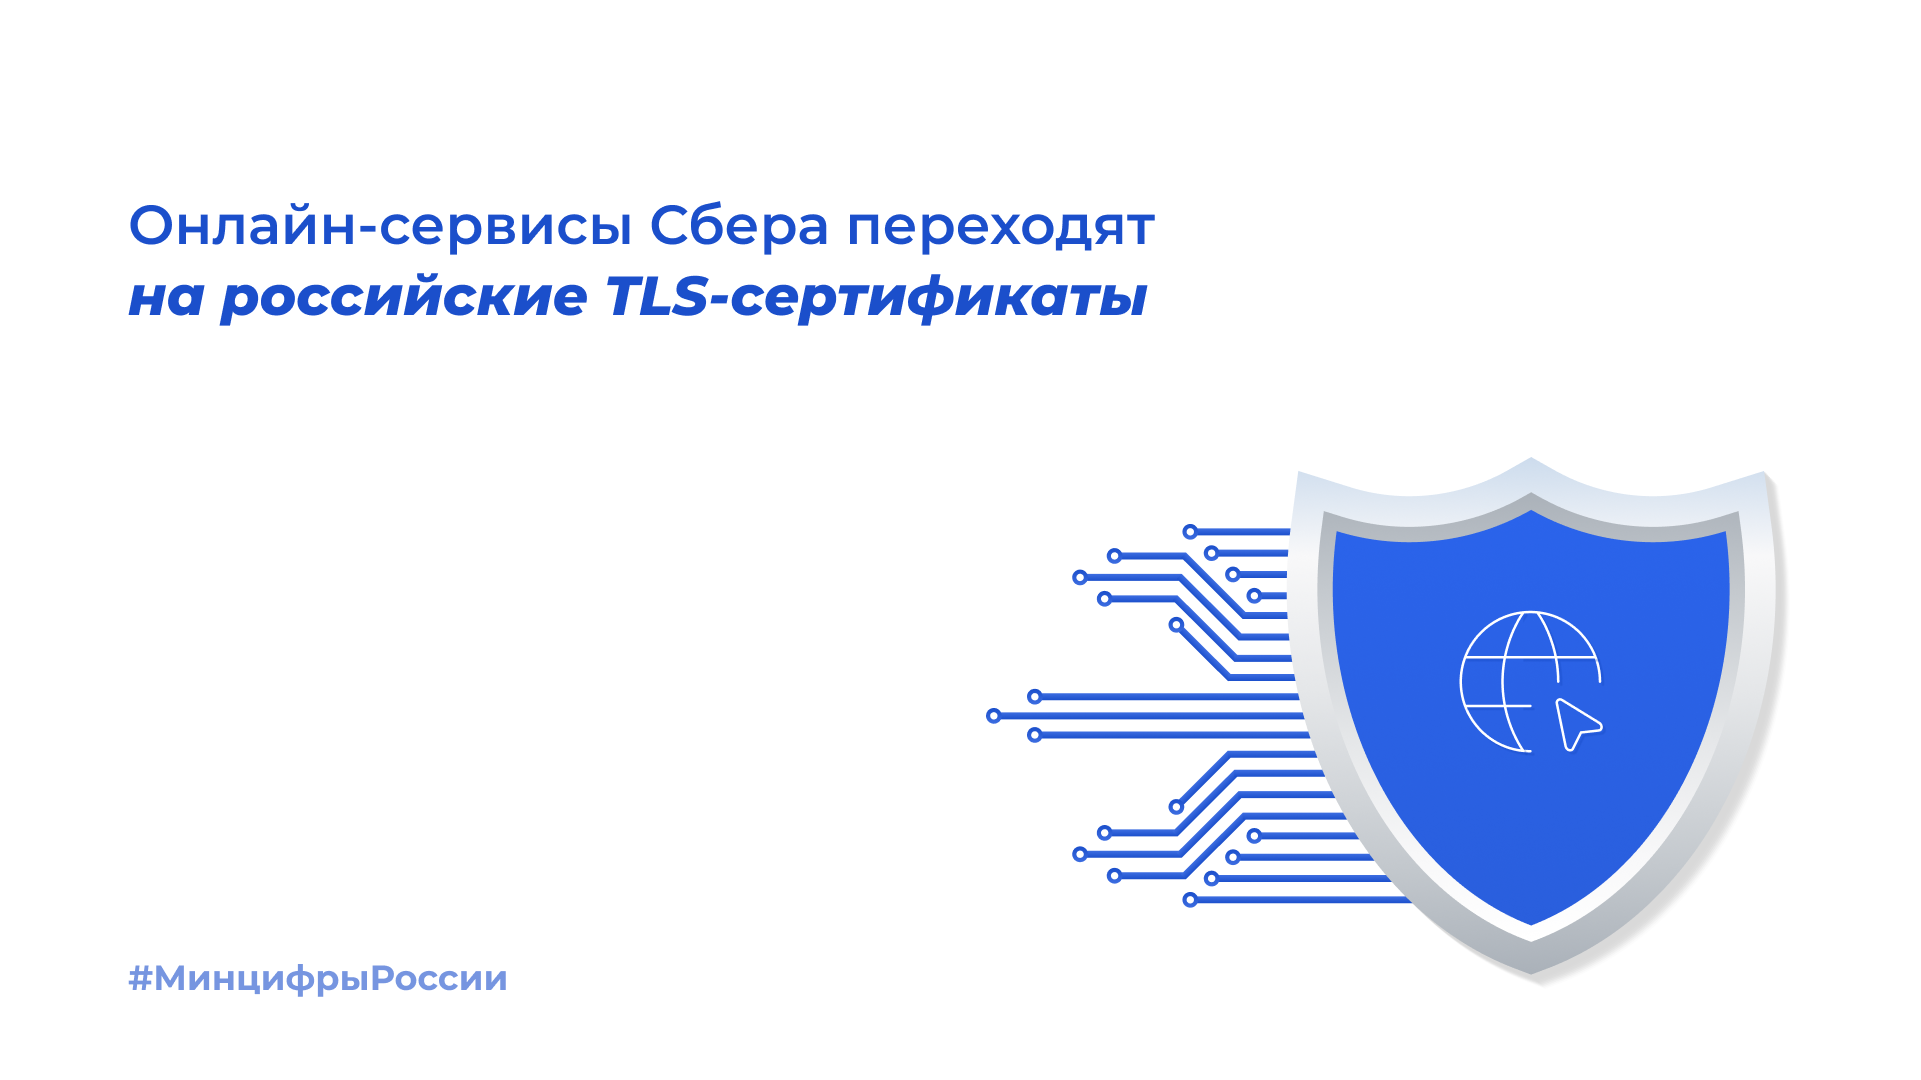 Онлайн-сервисы Сбера переходят на российские TLS-сертификаты